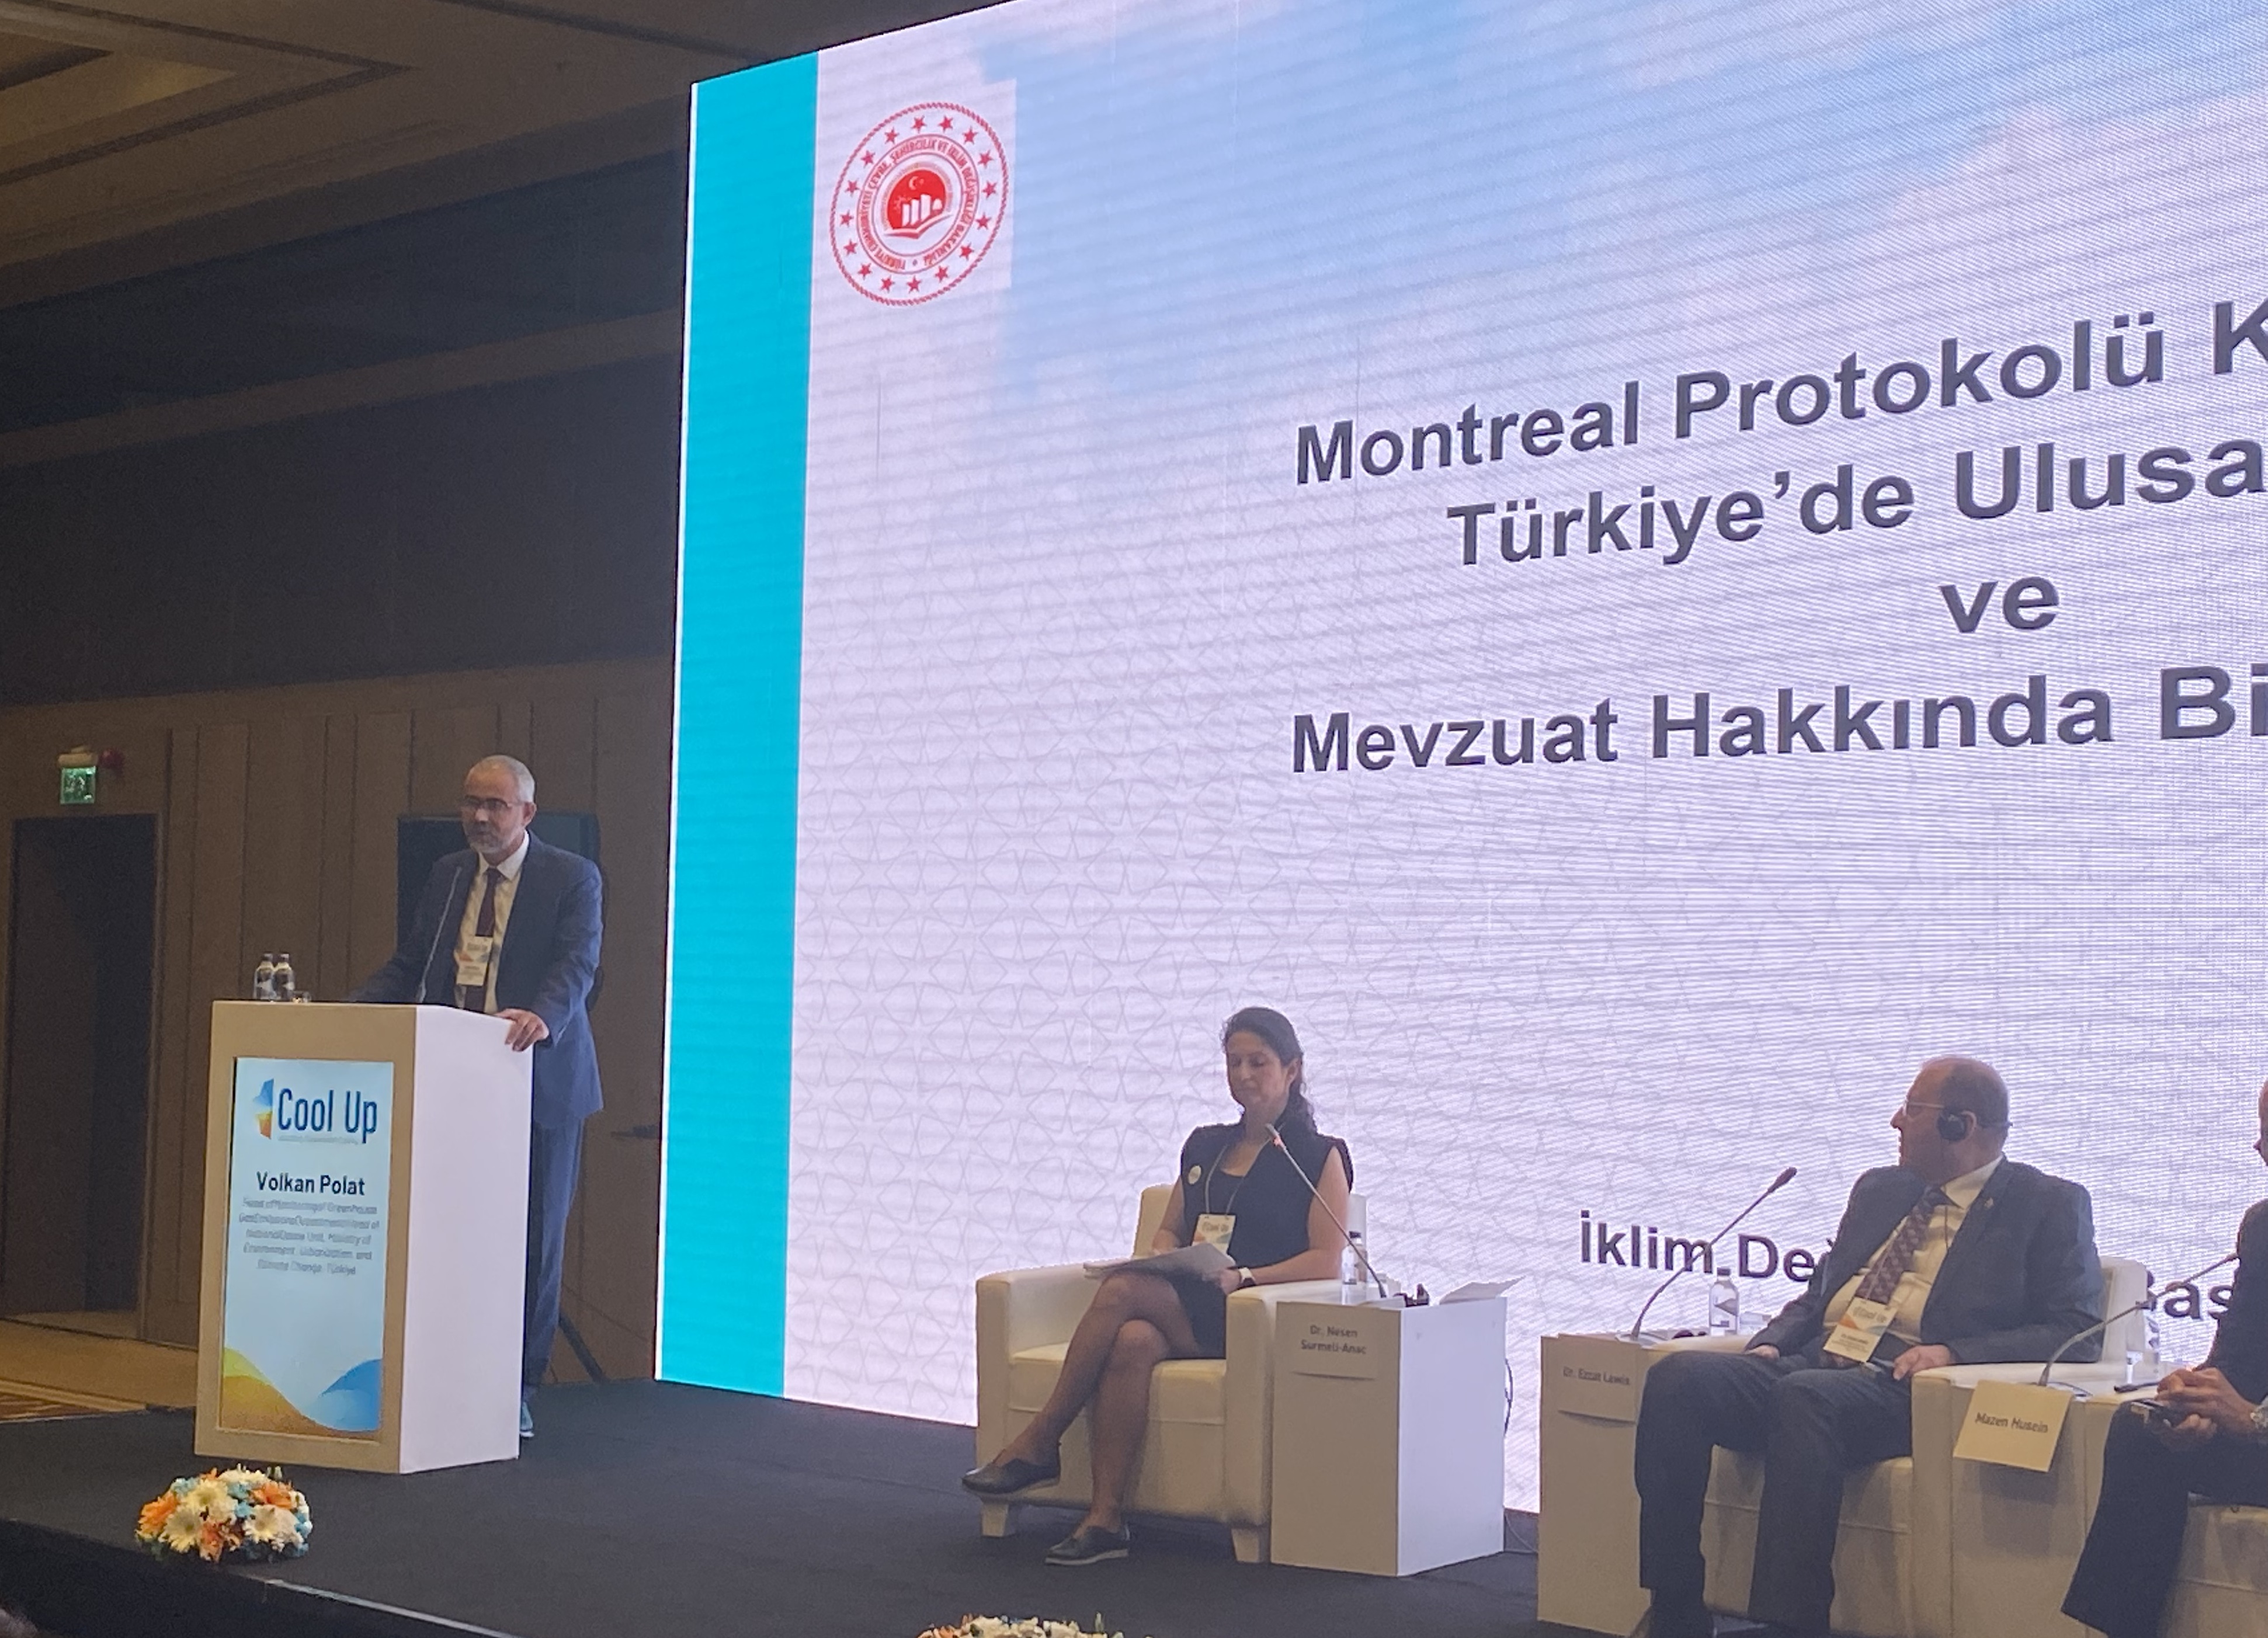 Cool Up Ortadoğu’da Sürdürülebilir Soğutmanın Yaygınlaştırılması Projesi Bölgesel Konferansı İstanbul’da Gerçekleştirildi